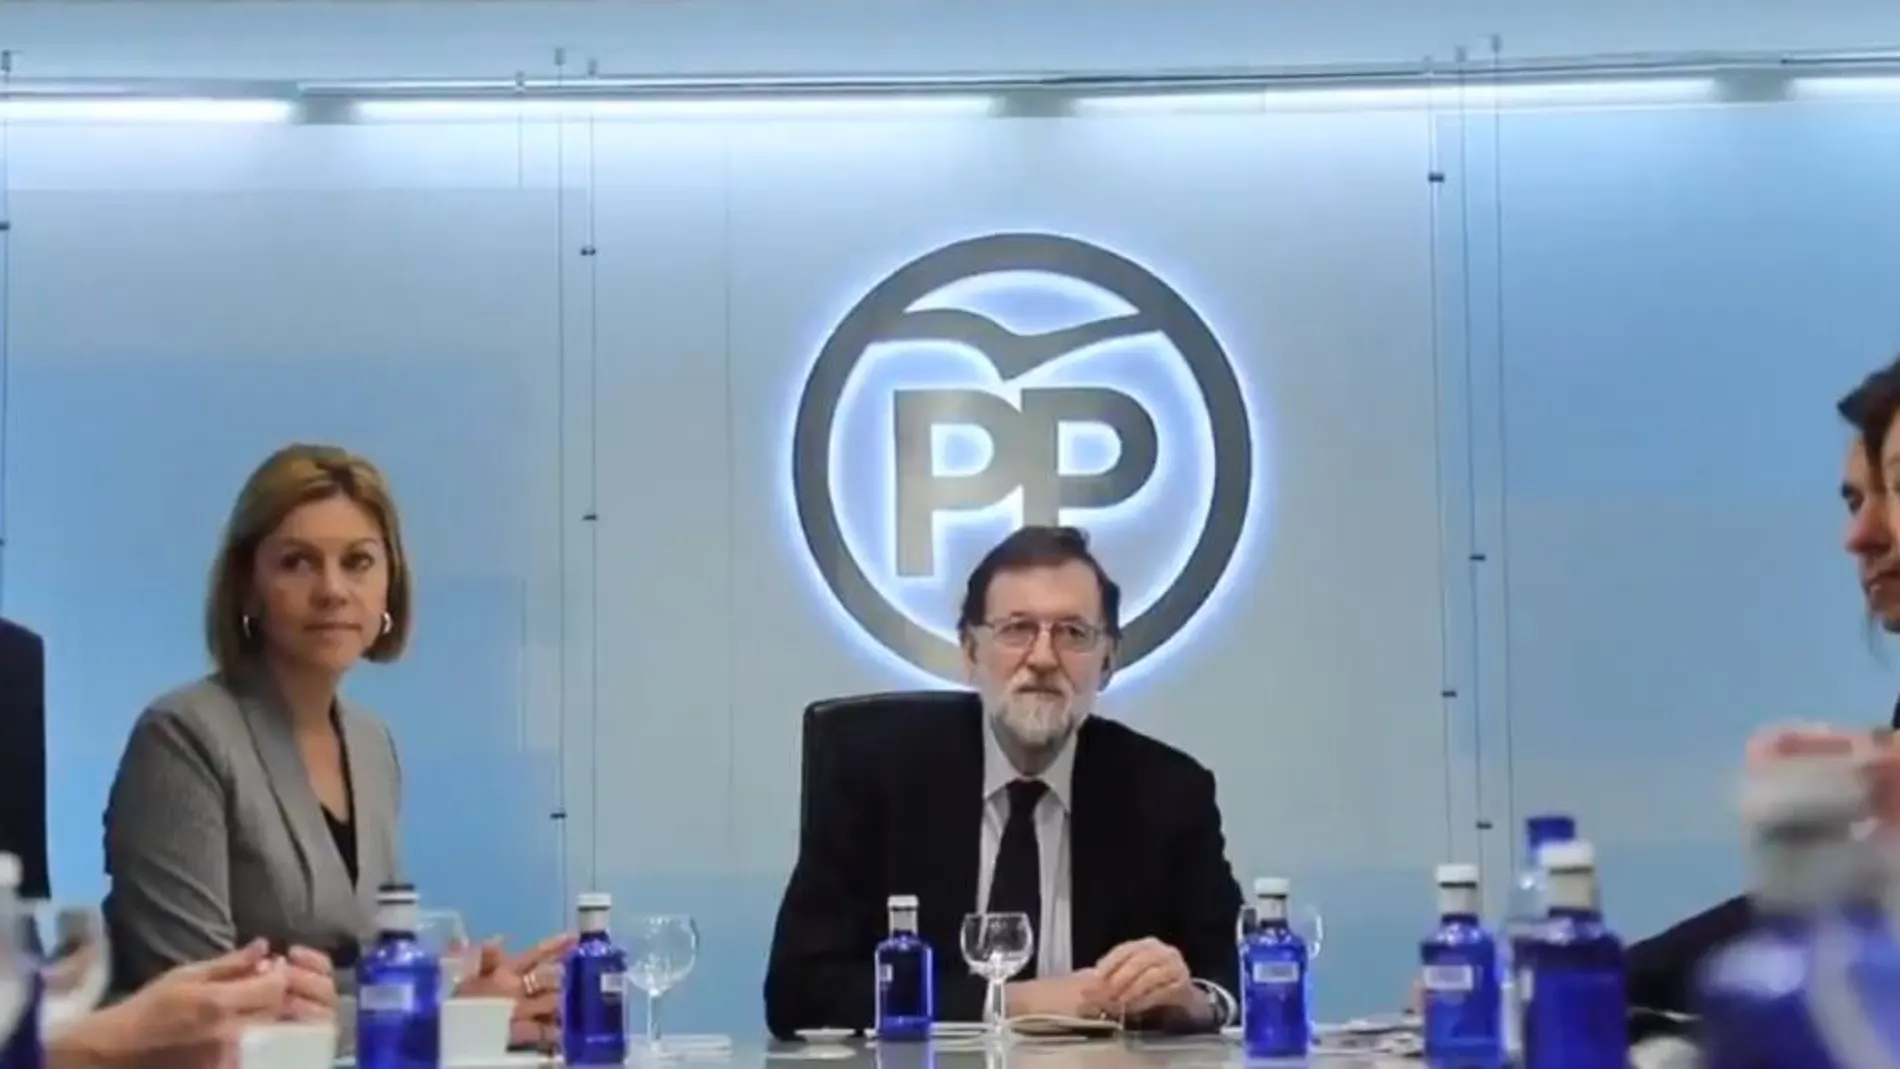 Secuencia del primer videoblog de Mariano Rajoy